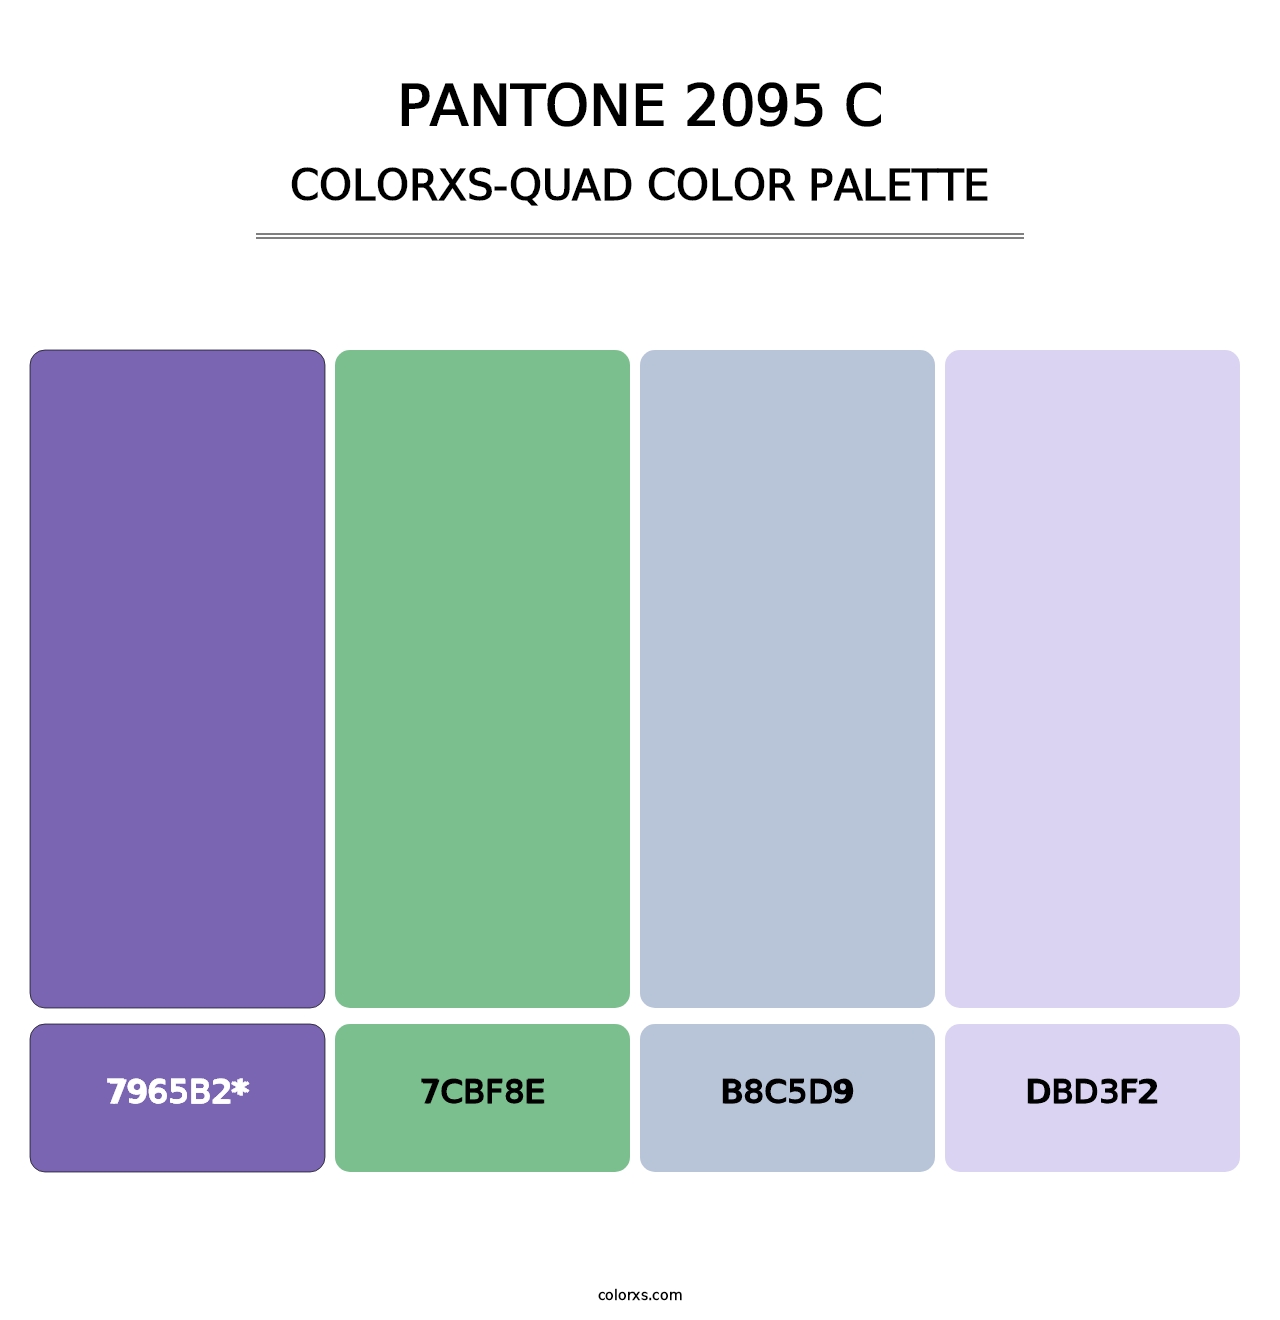 PANTONE 2095 C - Colorxs Quad Palette